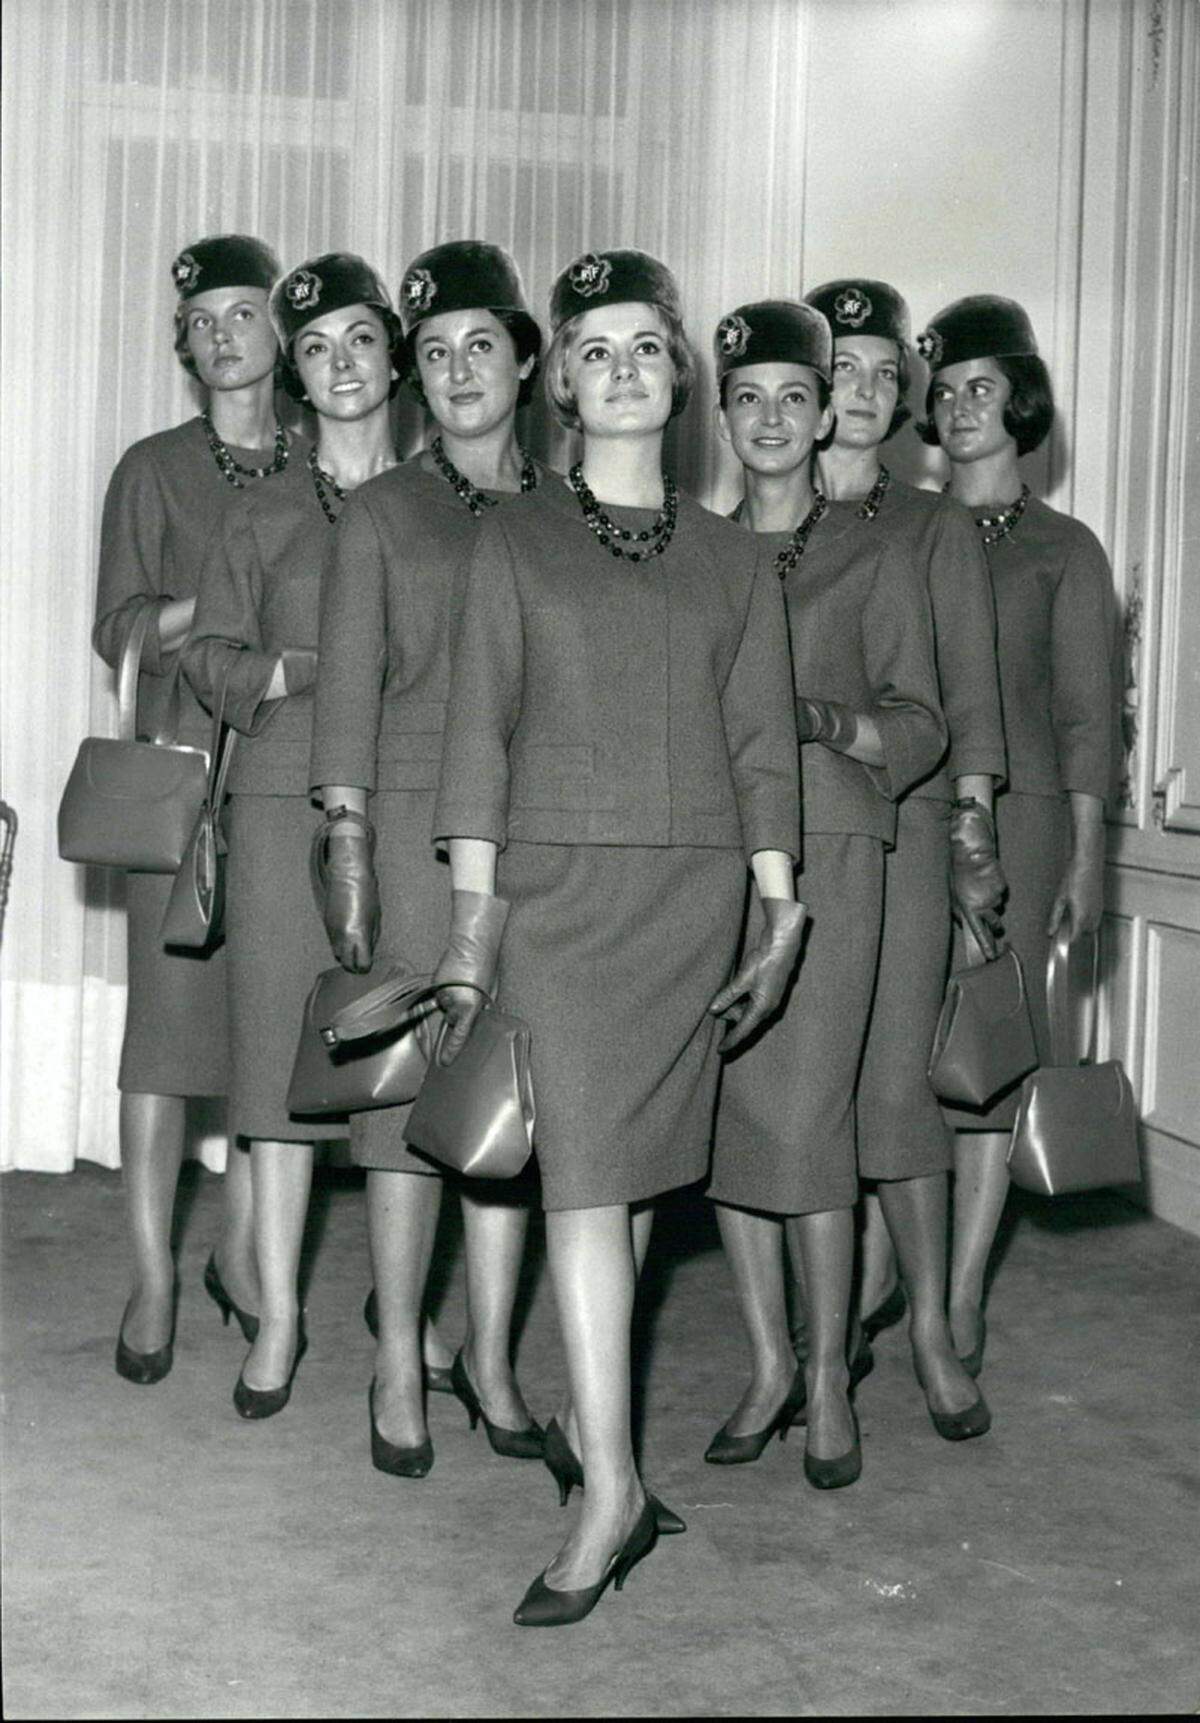 Pierre Cardin entwarf diese 60er-Jahre-Uniformen.